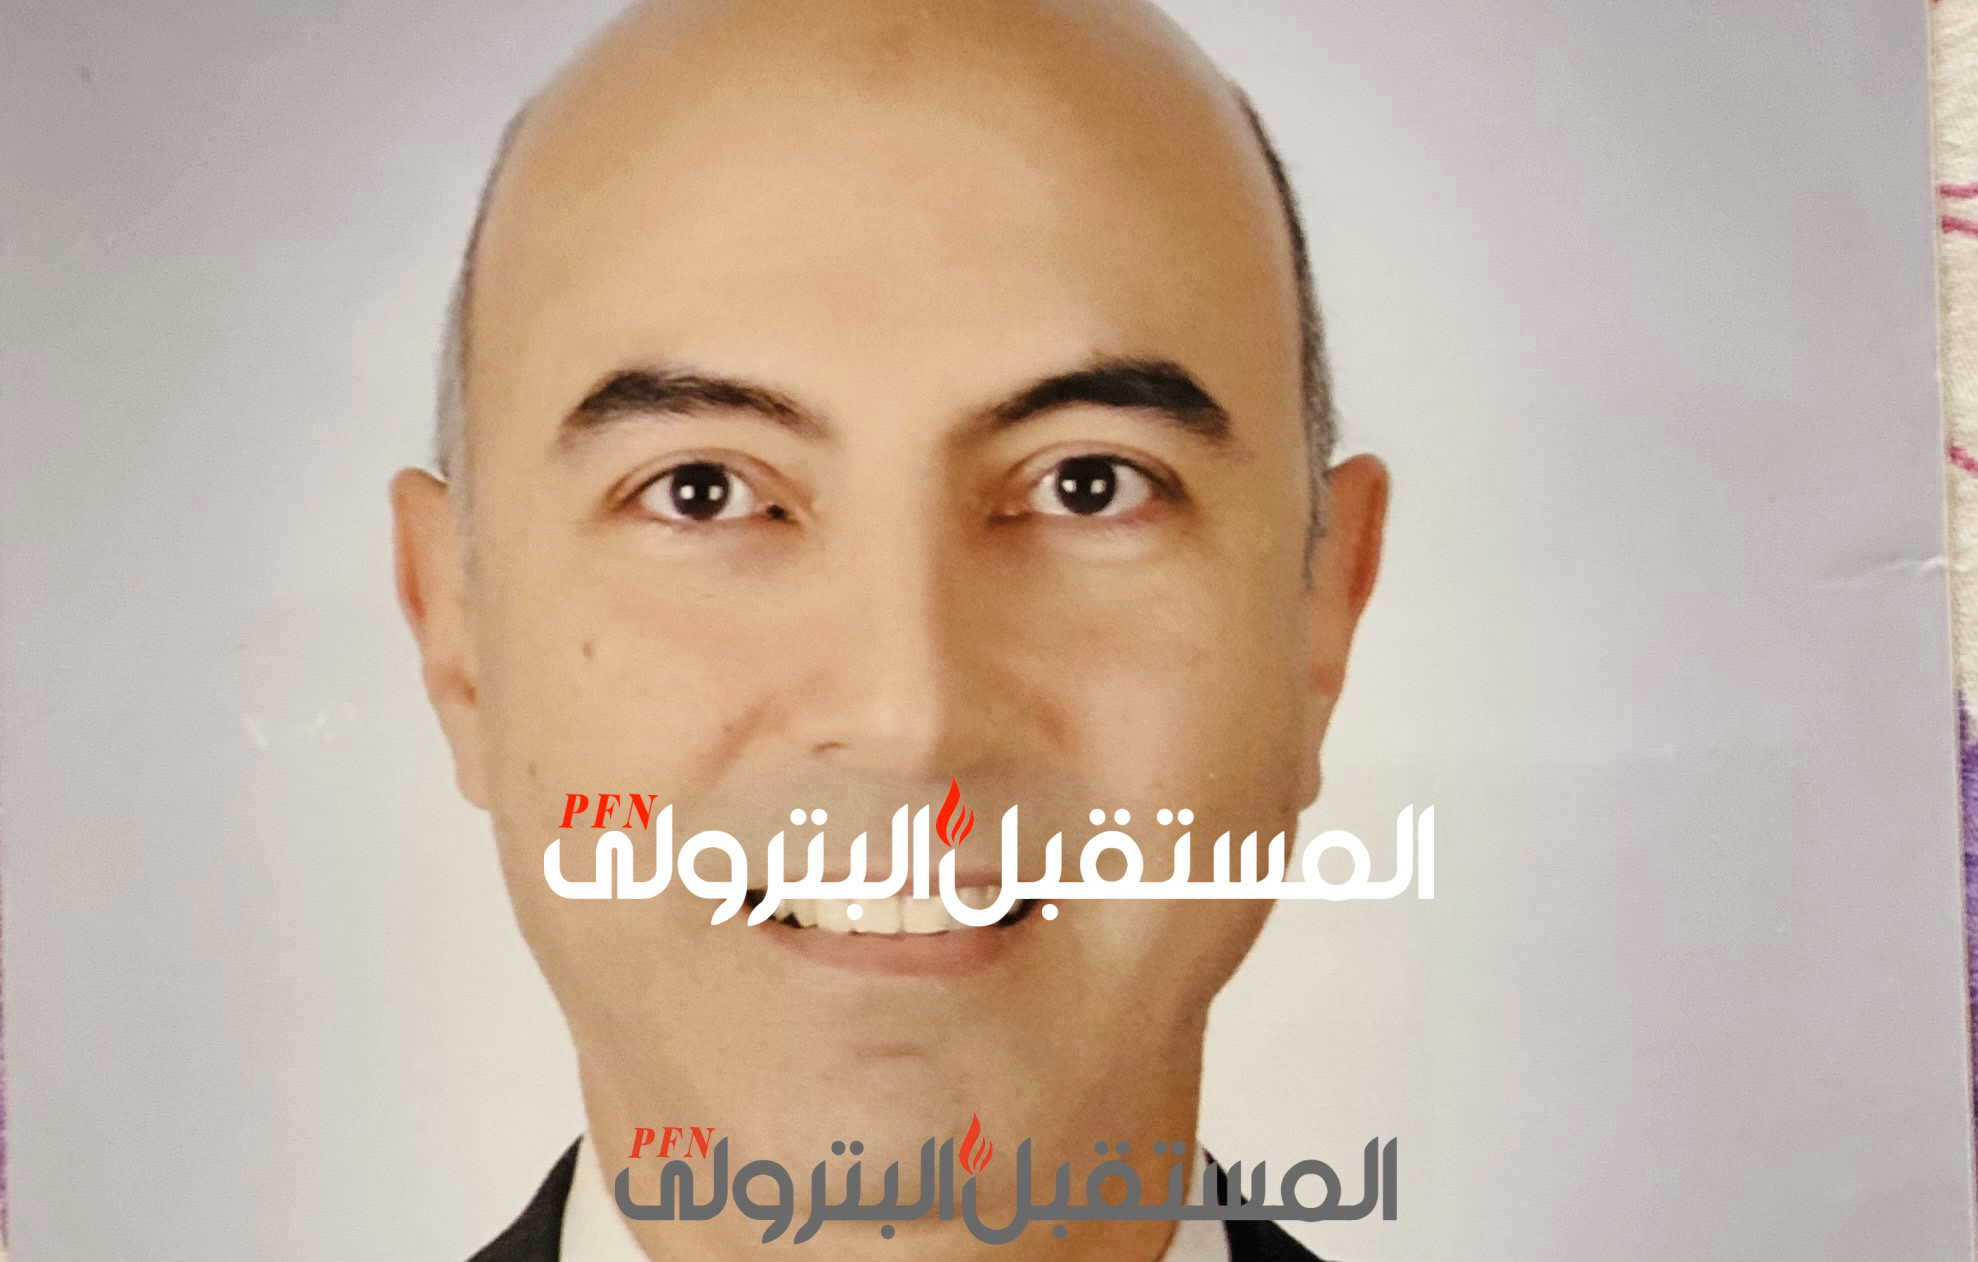 ماذا تعرف عن حسام التوني نائب رئيس الهيئة للشئون الادارية الجديد؟